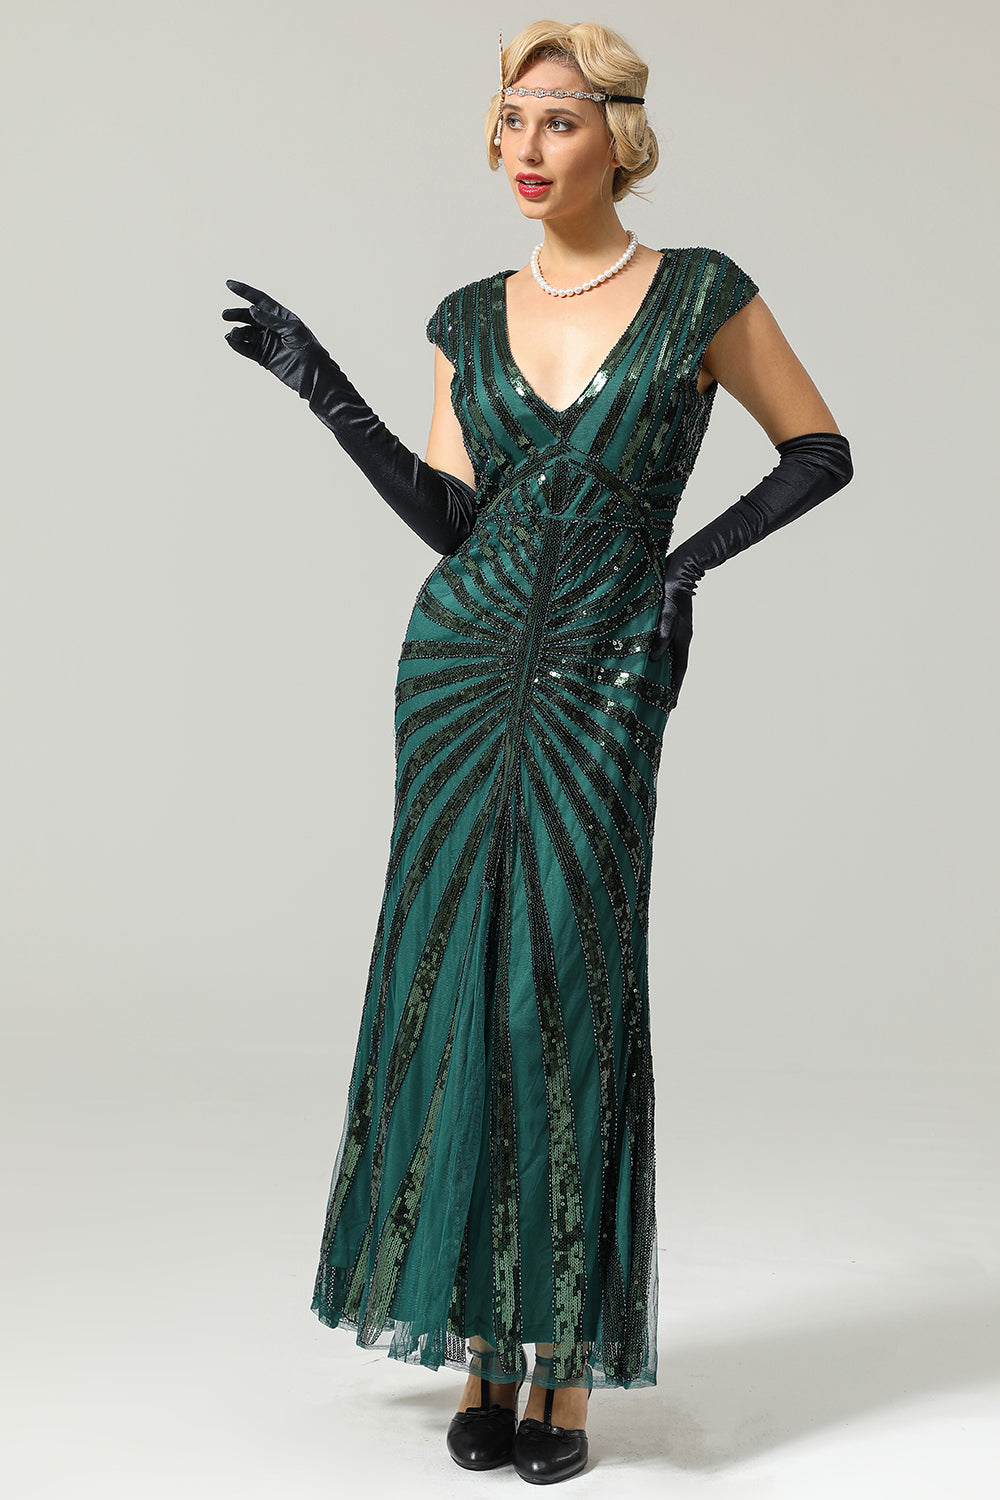 Robe Sirène Année 1920 Gatsby Flapper avec paillettes